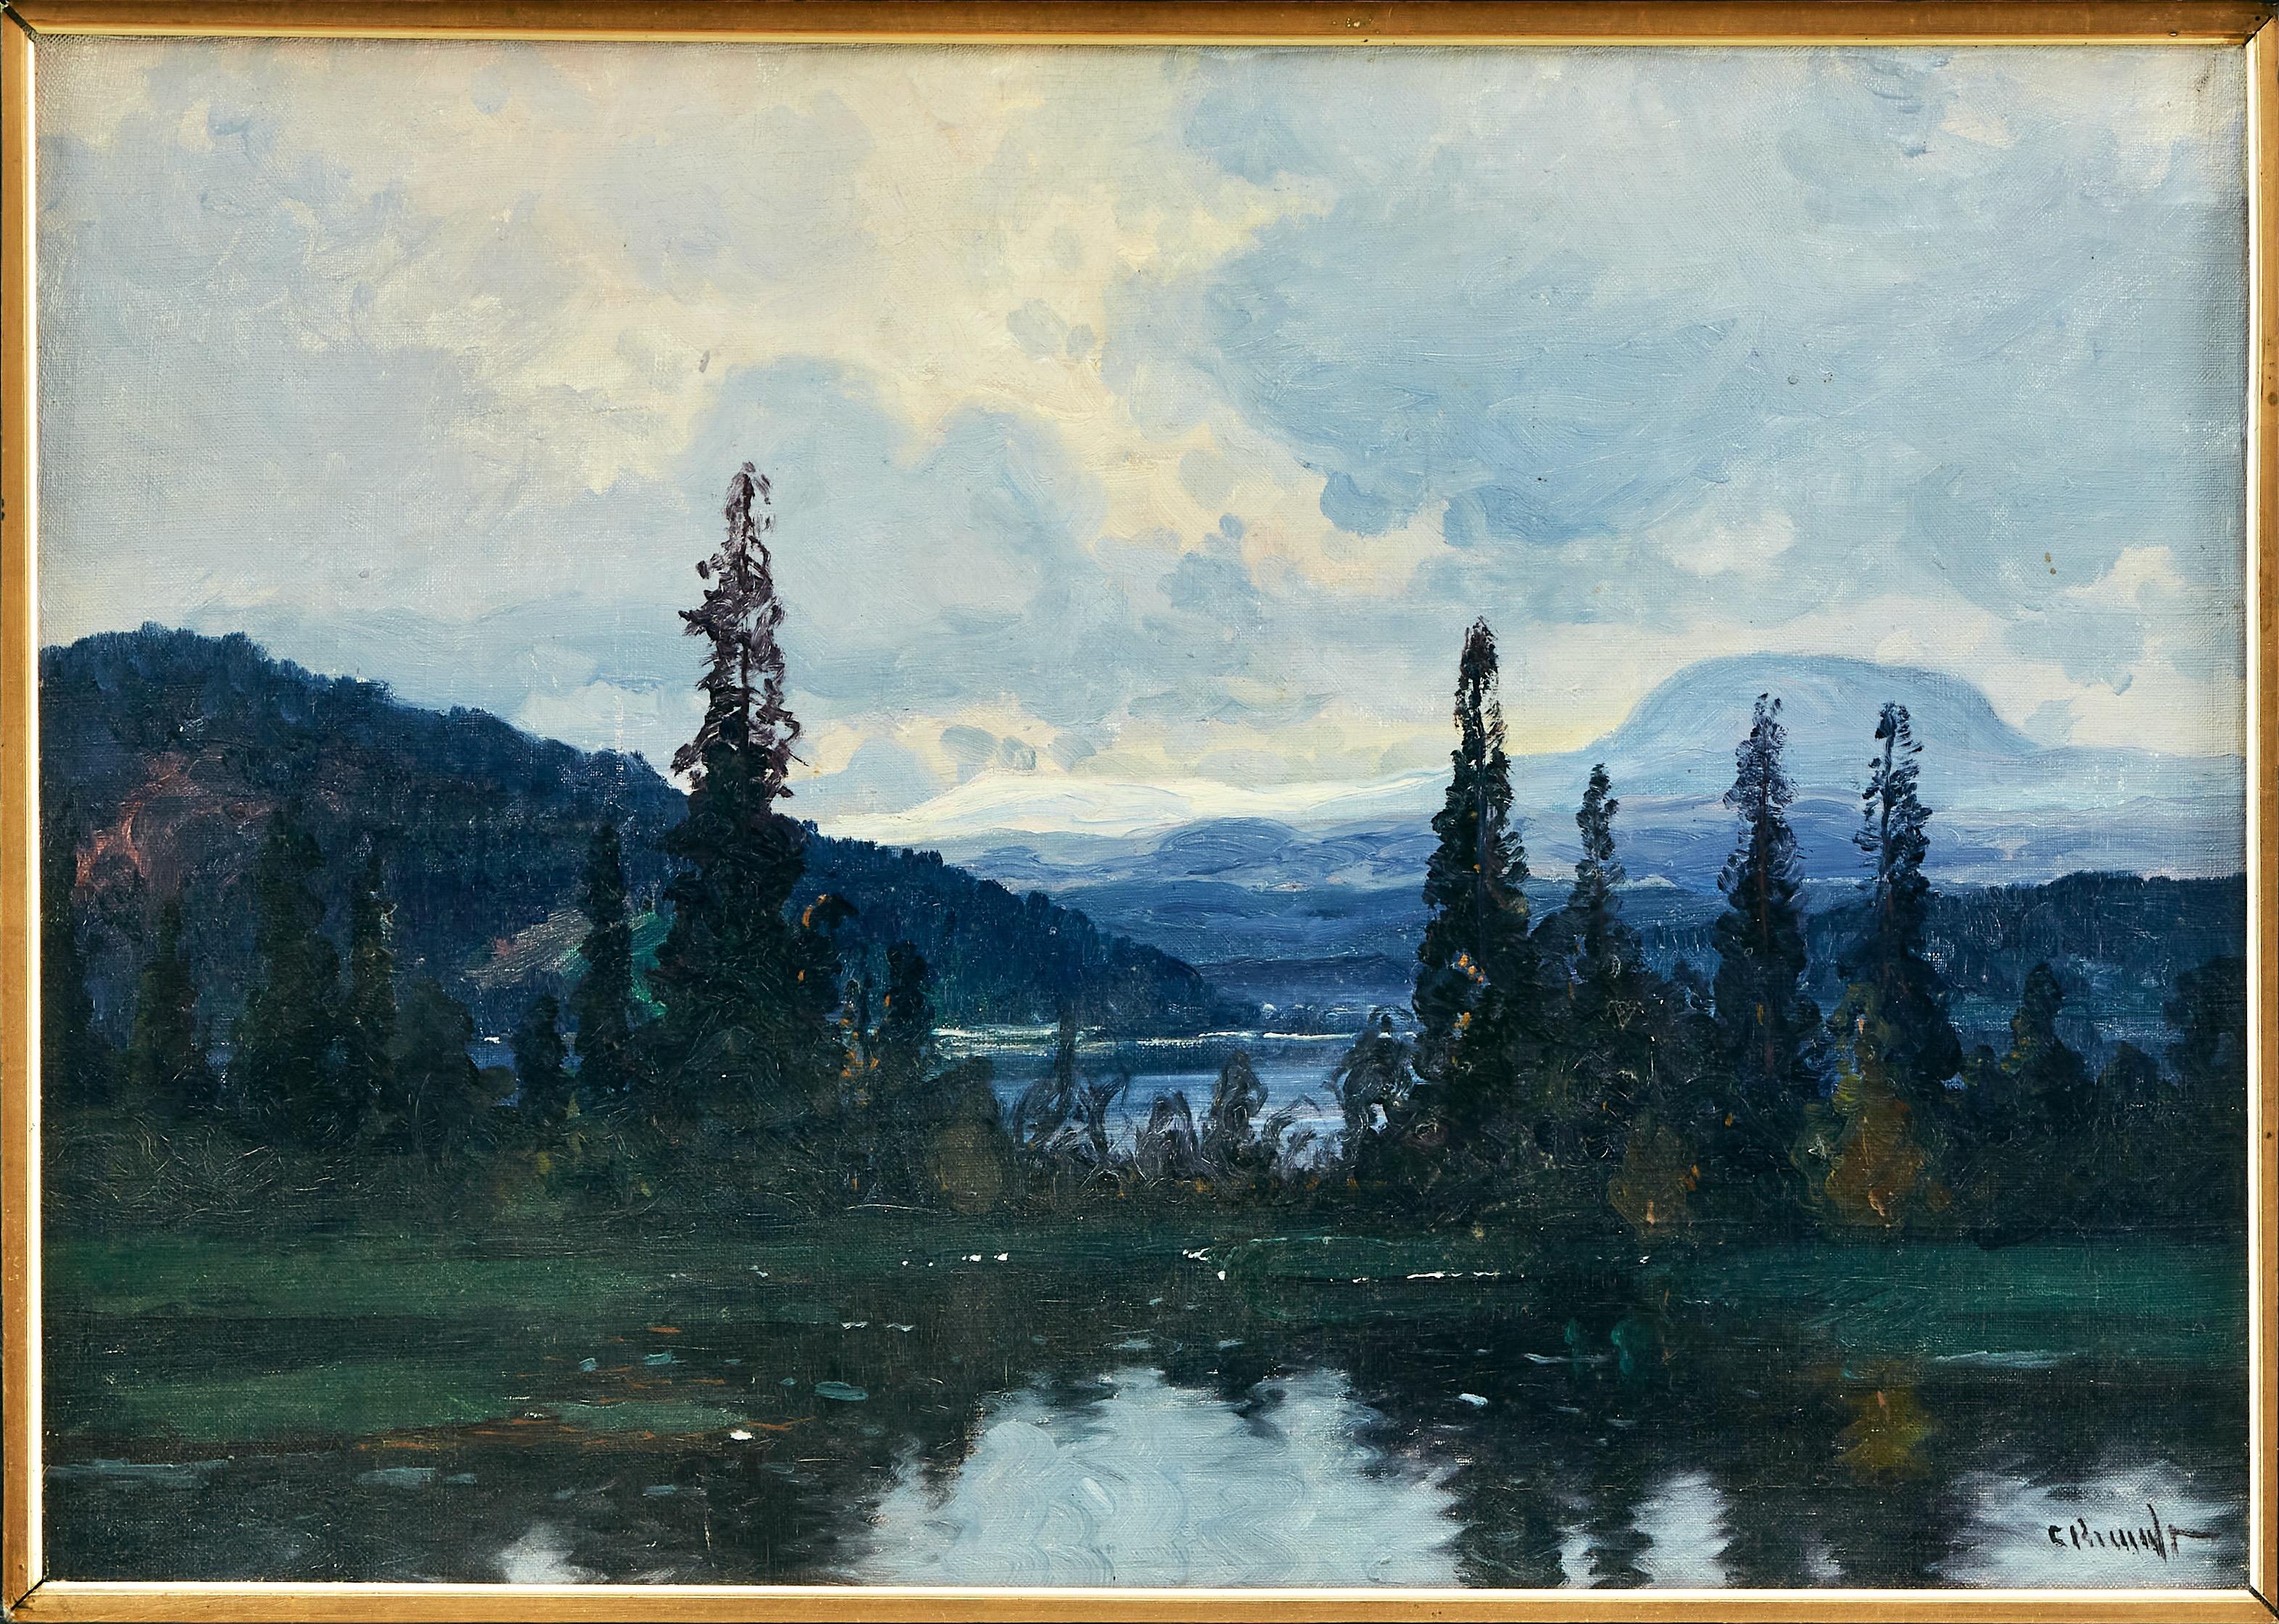 Landscape Painting Carl Brandt -  Nolbykullen et Ljungan, paysage de montagne suédois. Huile sur toile, circa 1900.